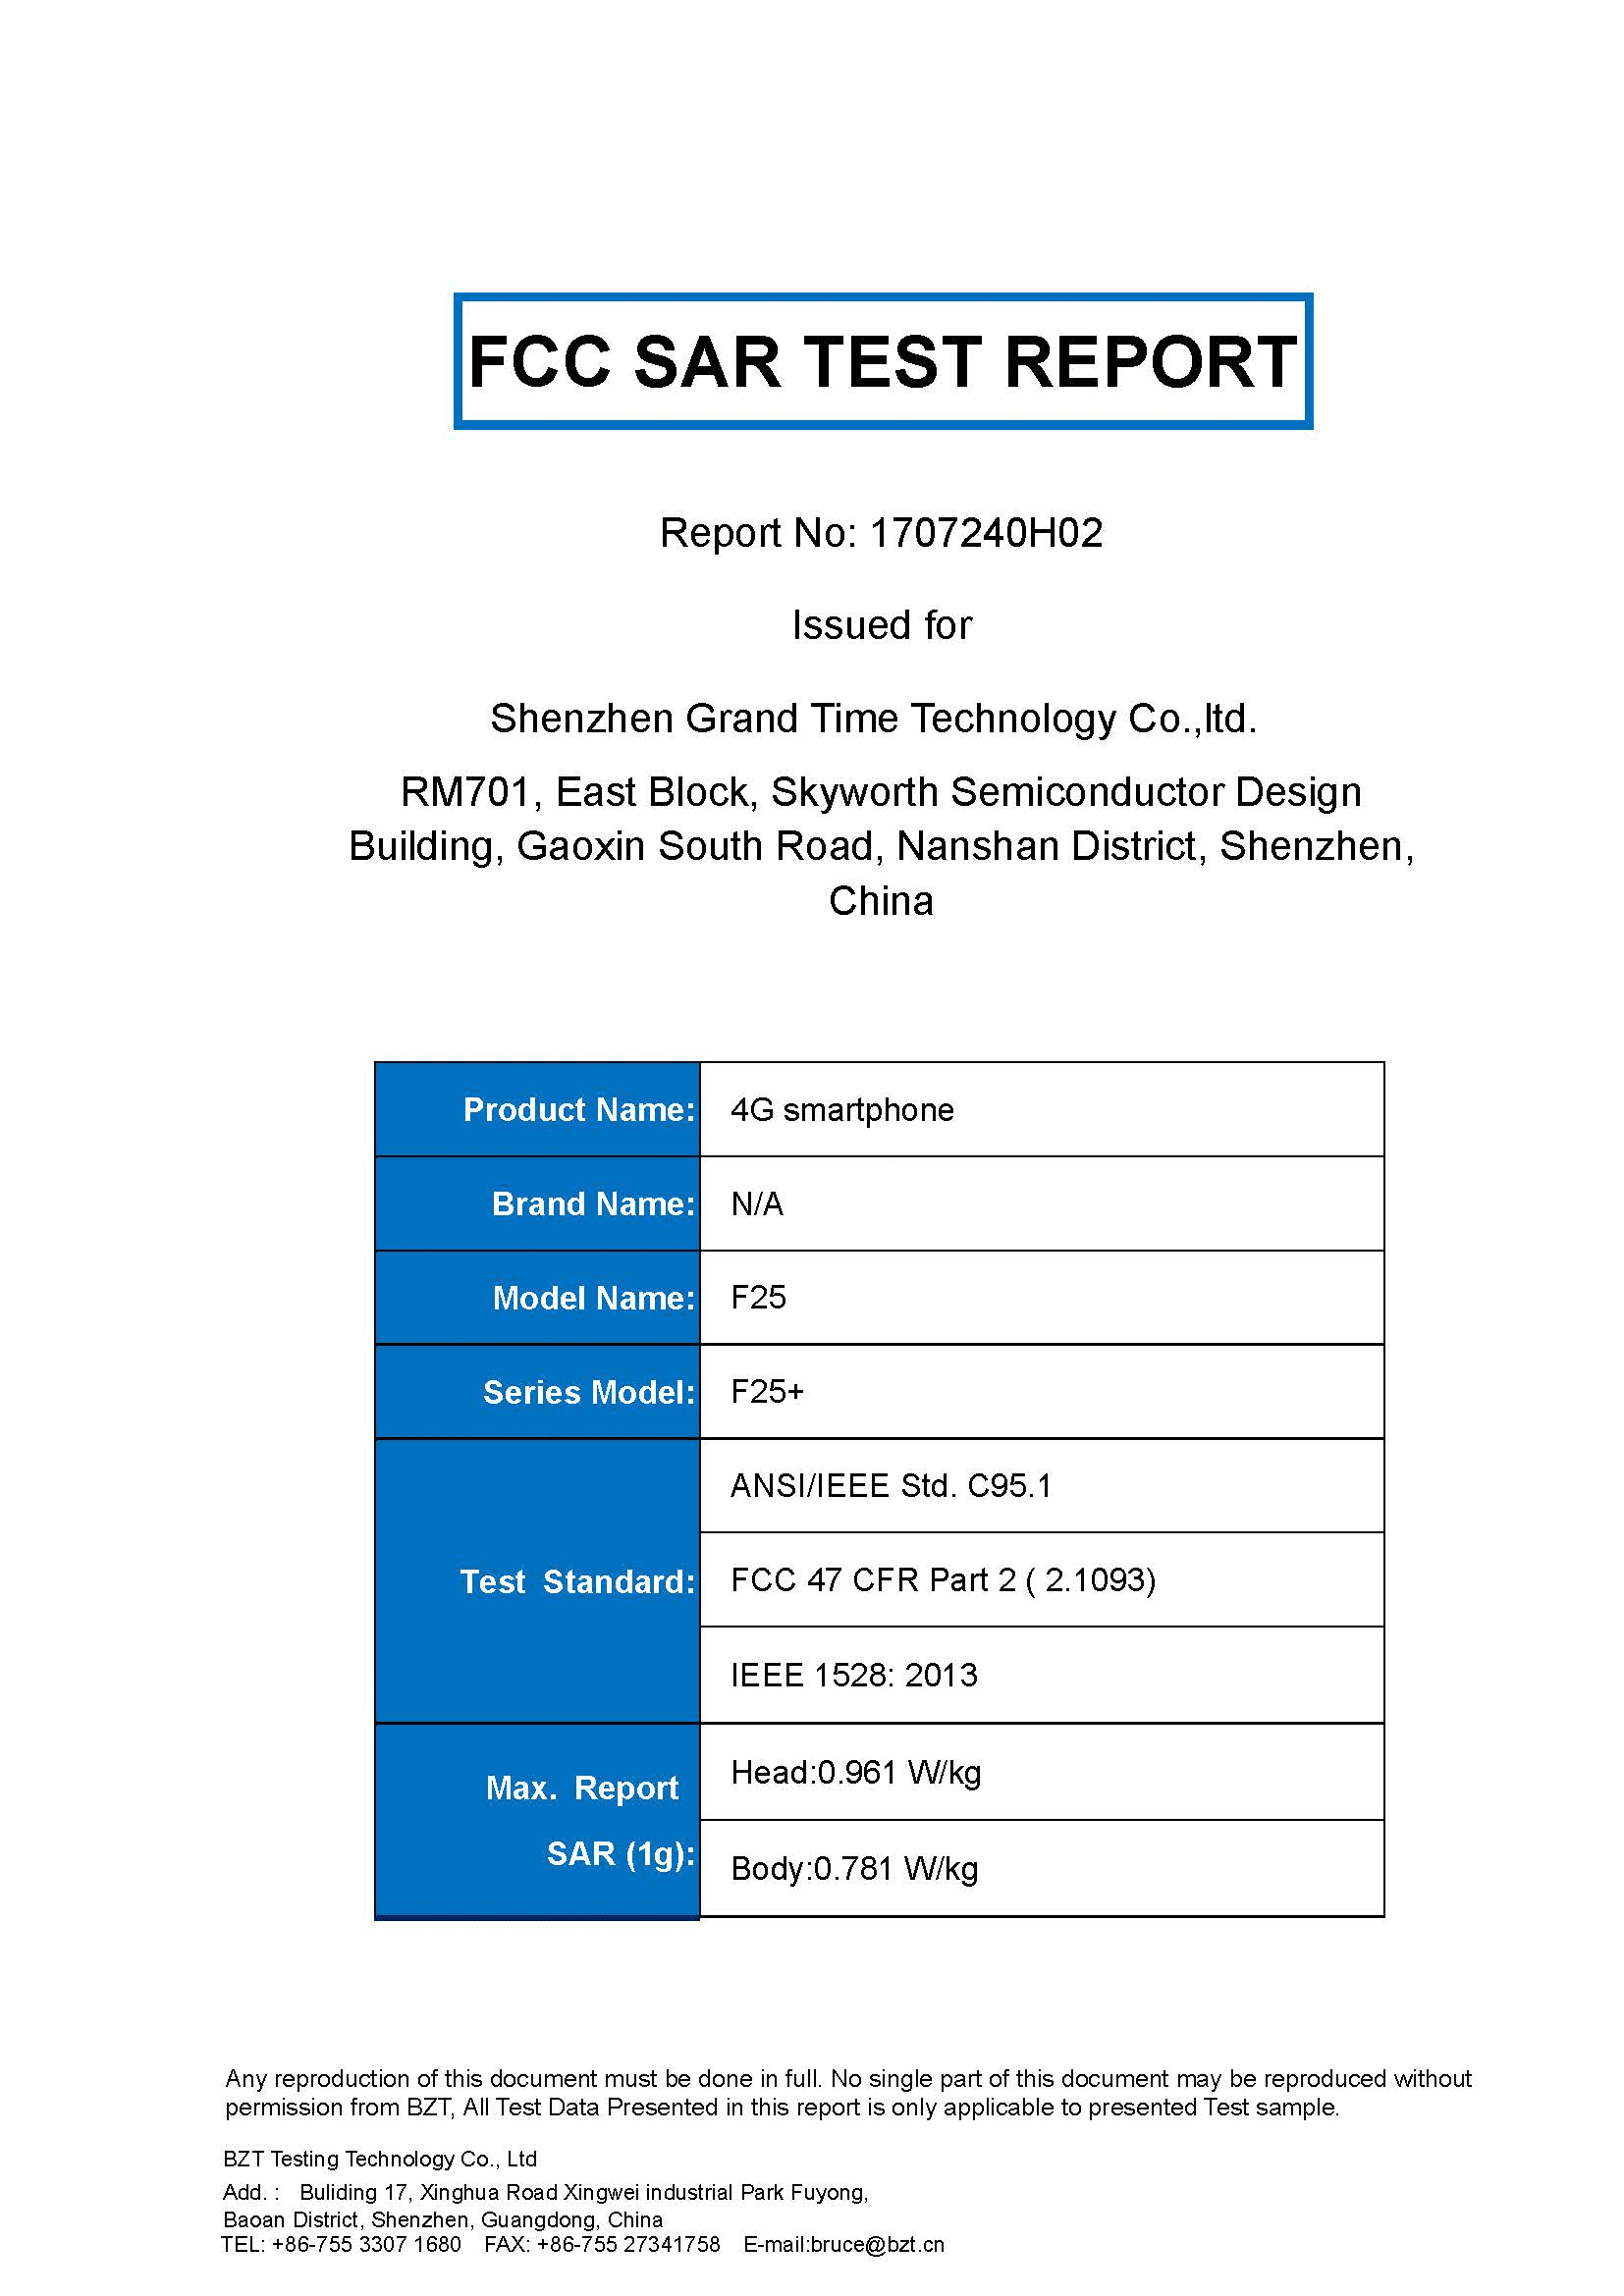 FCC_SAR_TEST_REPORT